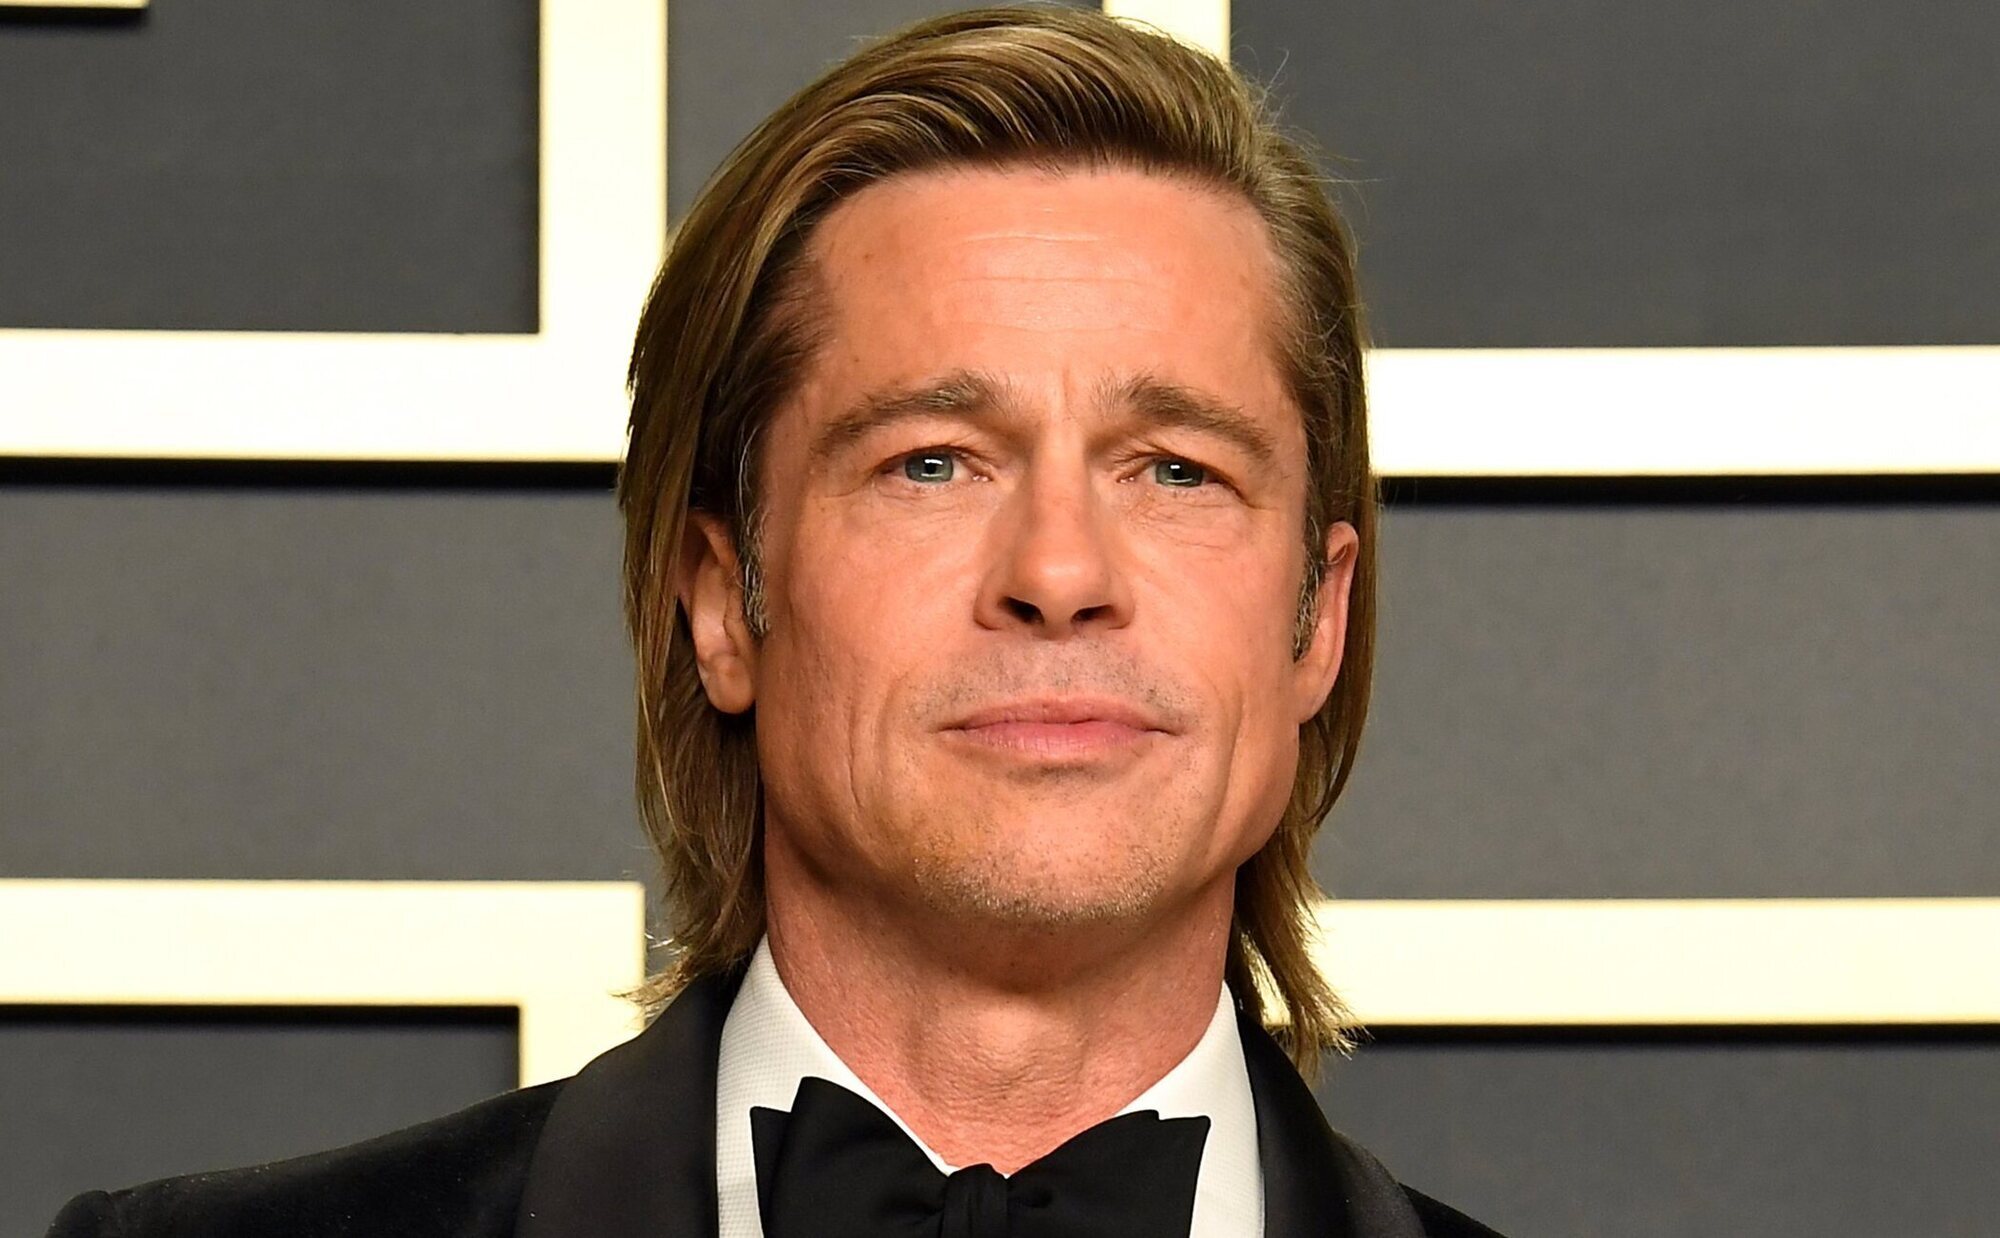 Un falso Brad Pitt estafa 170.000 euros a una mujer de Granada haciéndole creer que tenían una relación